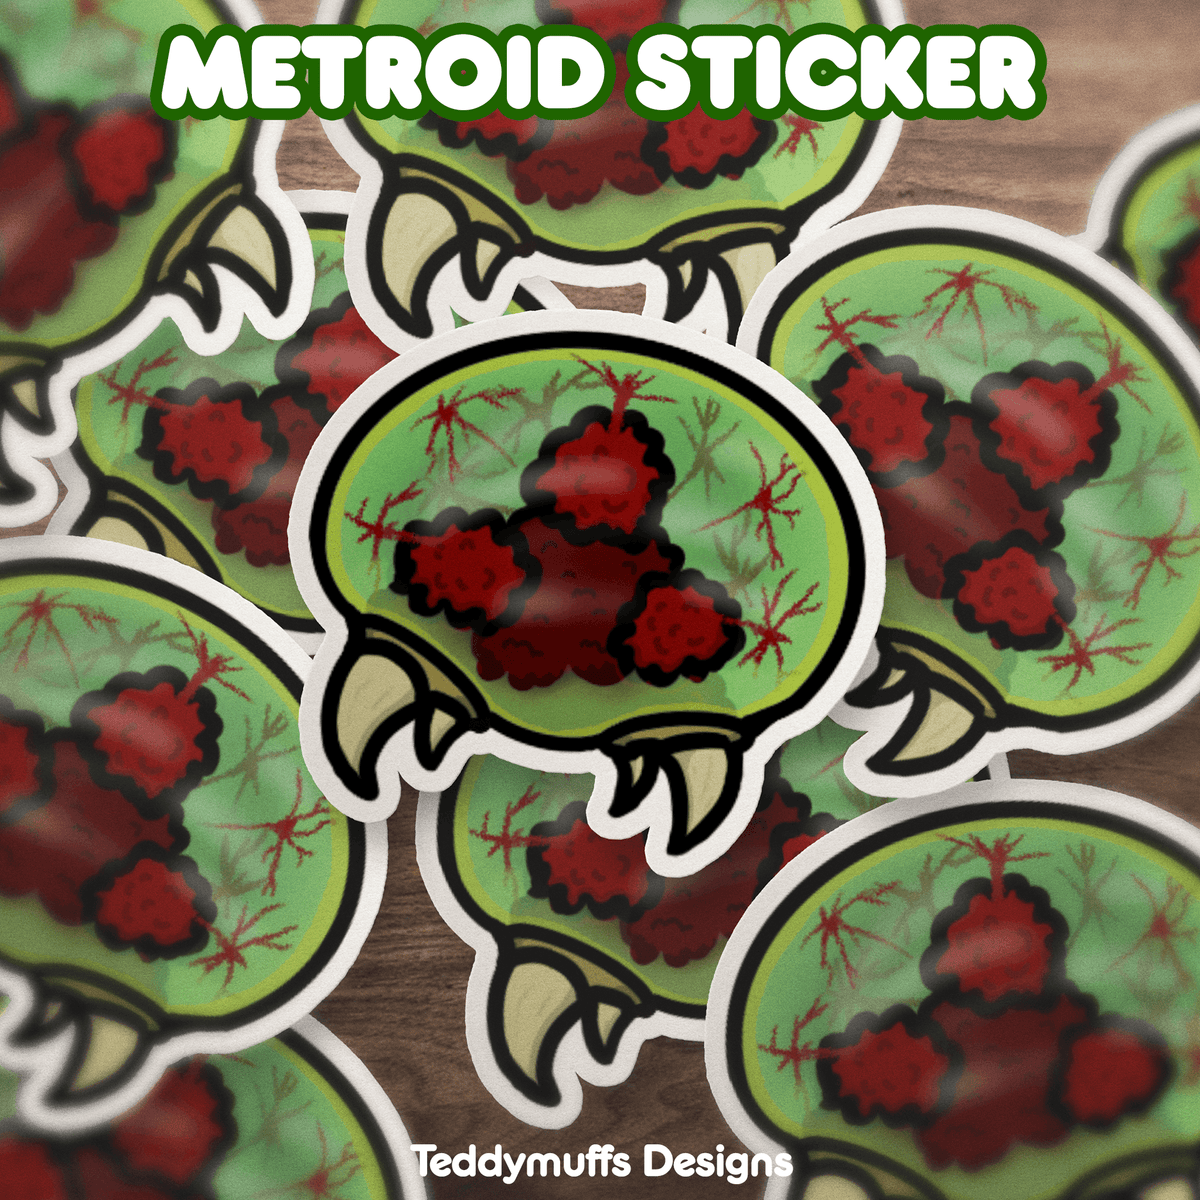 Metroid Sticker - Teddymuffs Designs